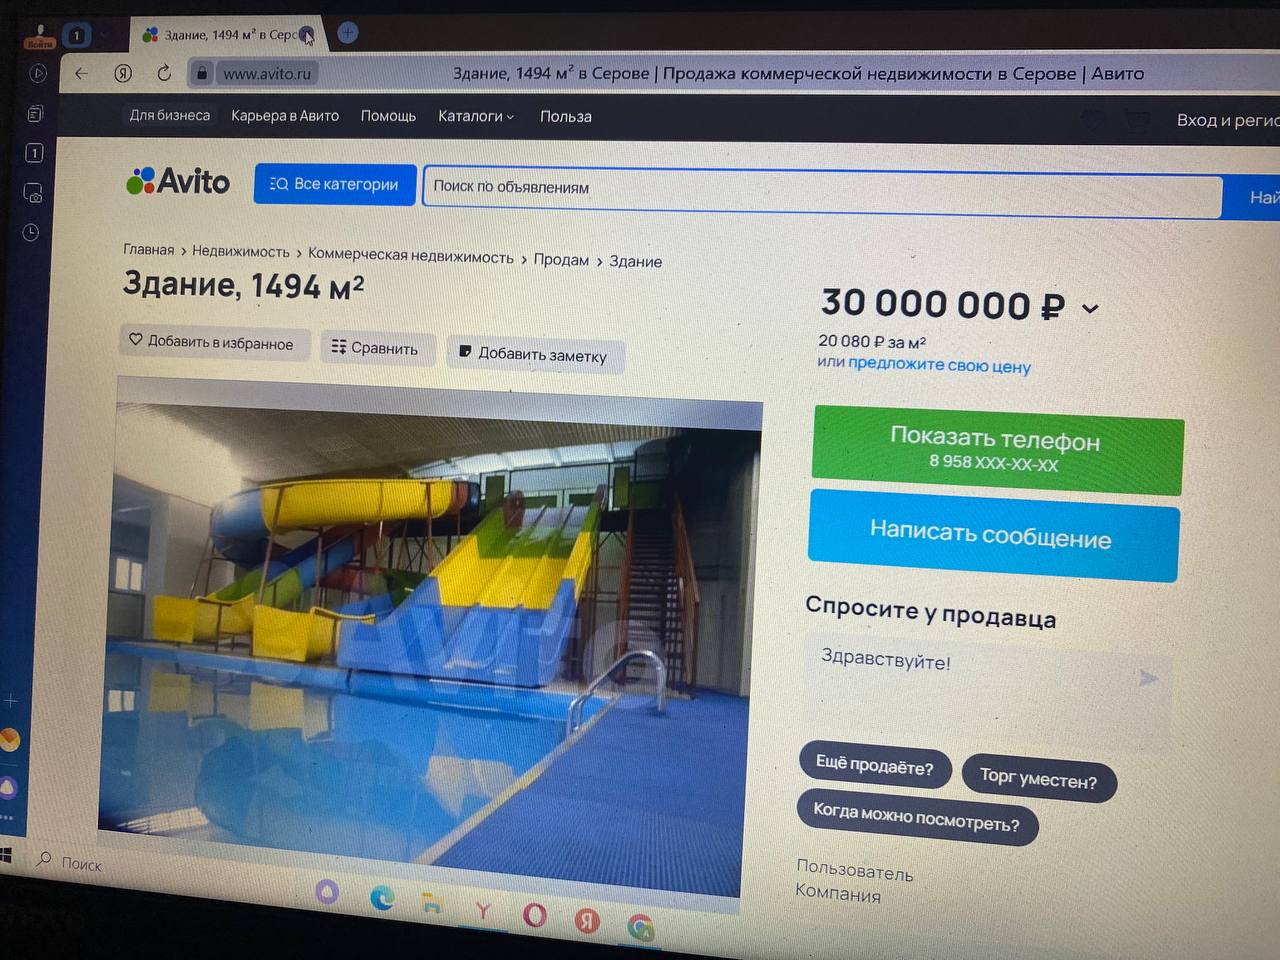 На “Авито” продается серовский аквапарк “Пляж” за 30 миллионов рублей